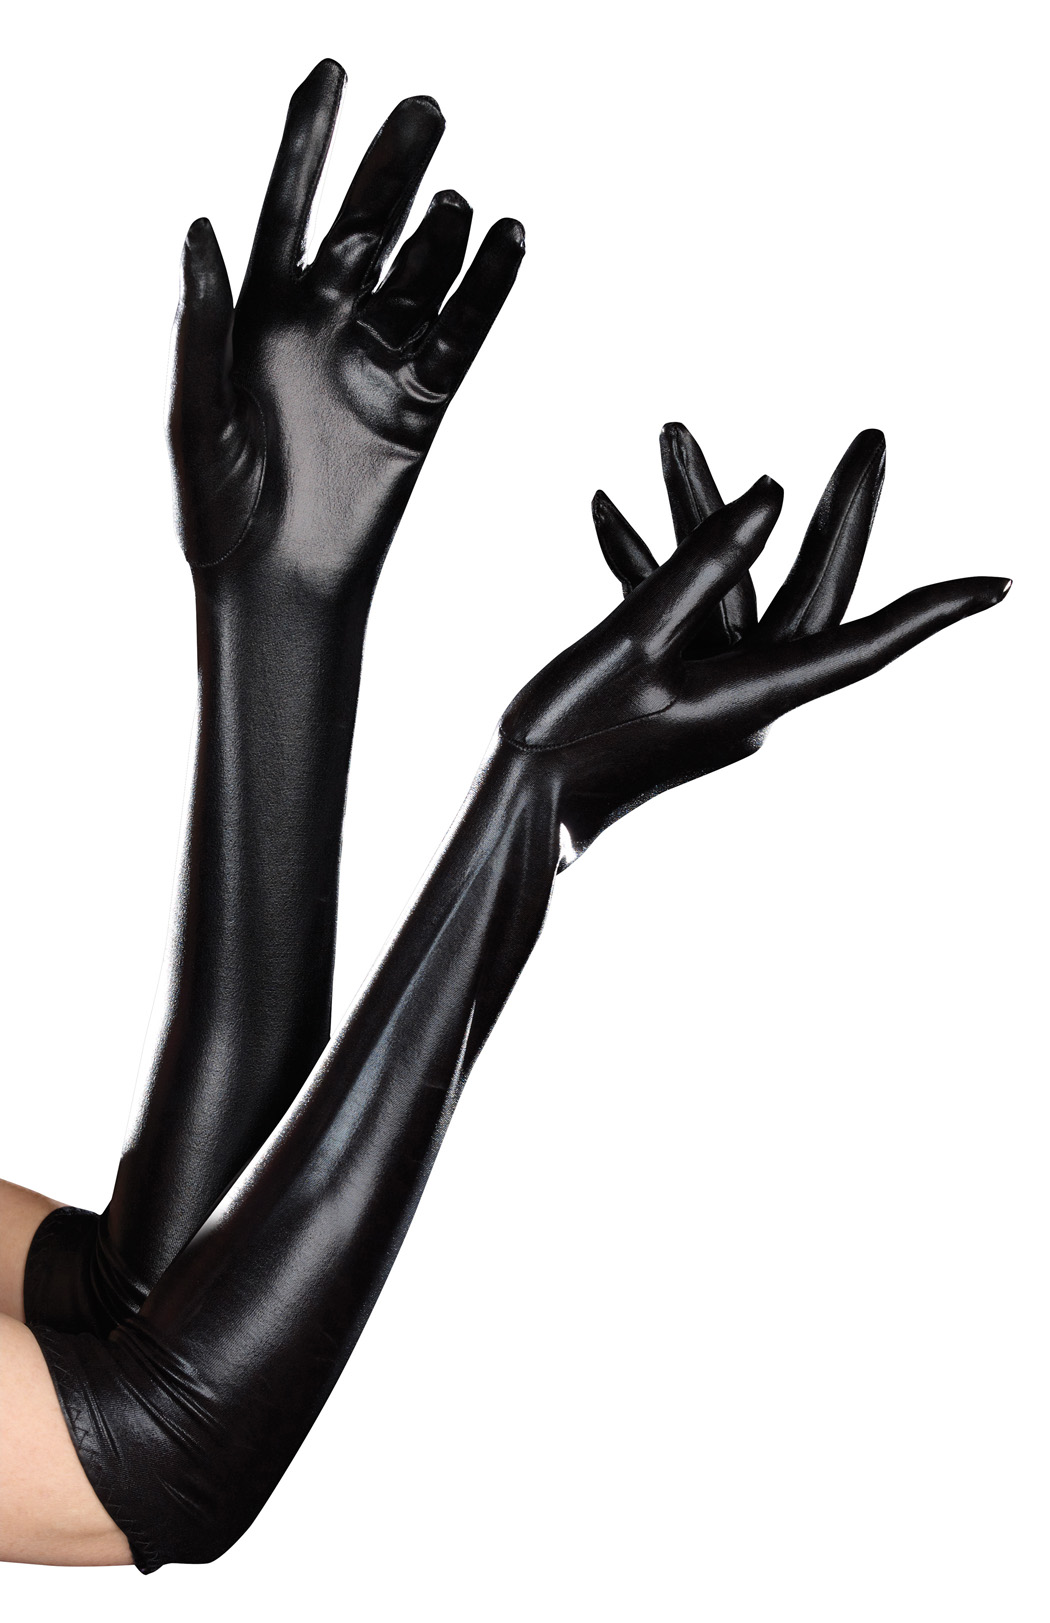 Dreamgirl Dominique Glove - Black - One Size